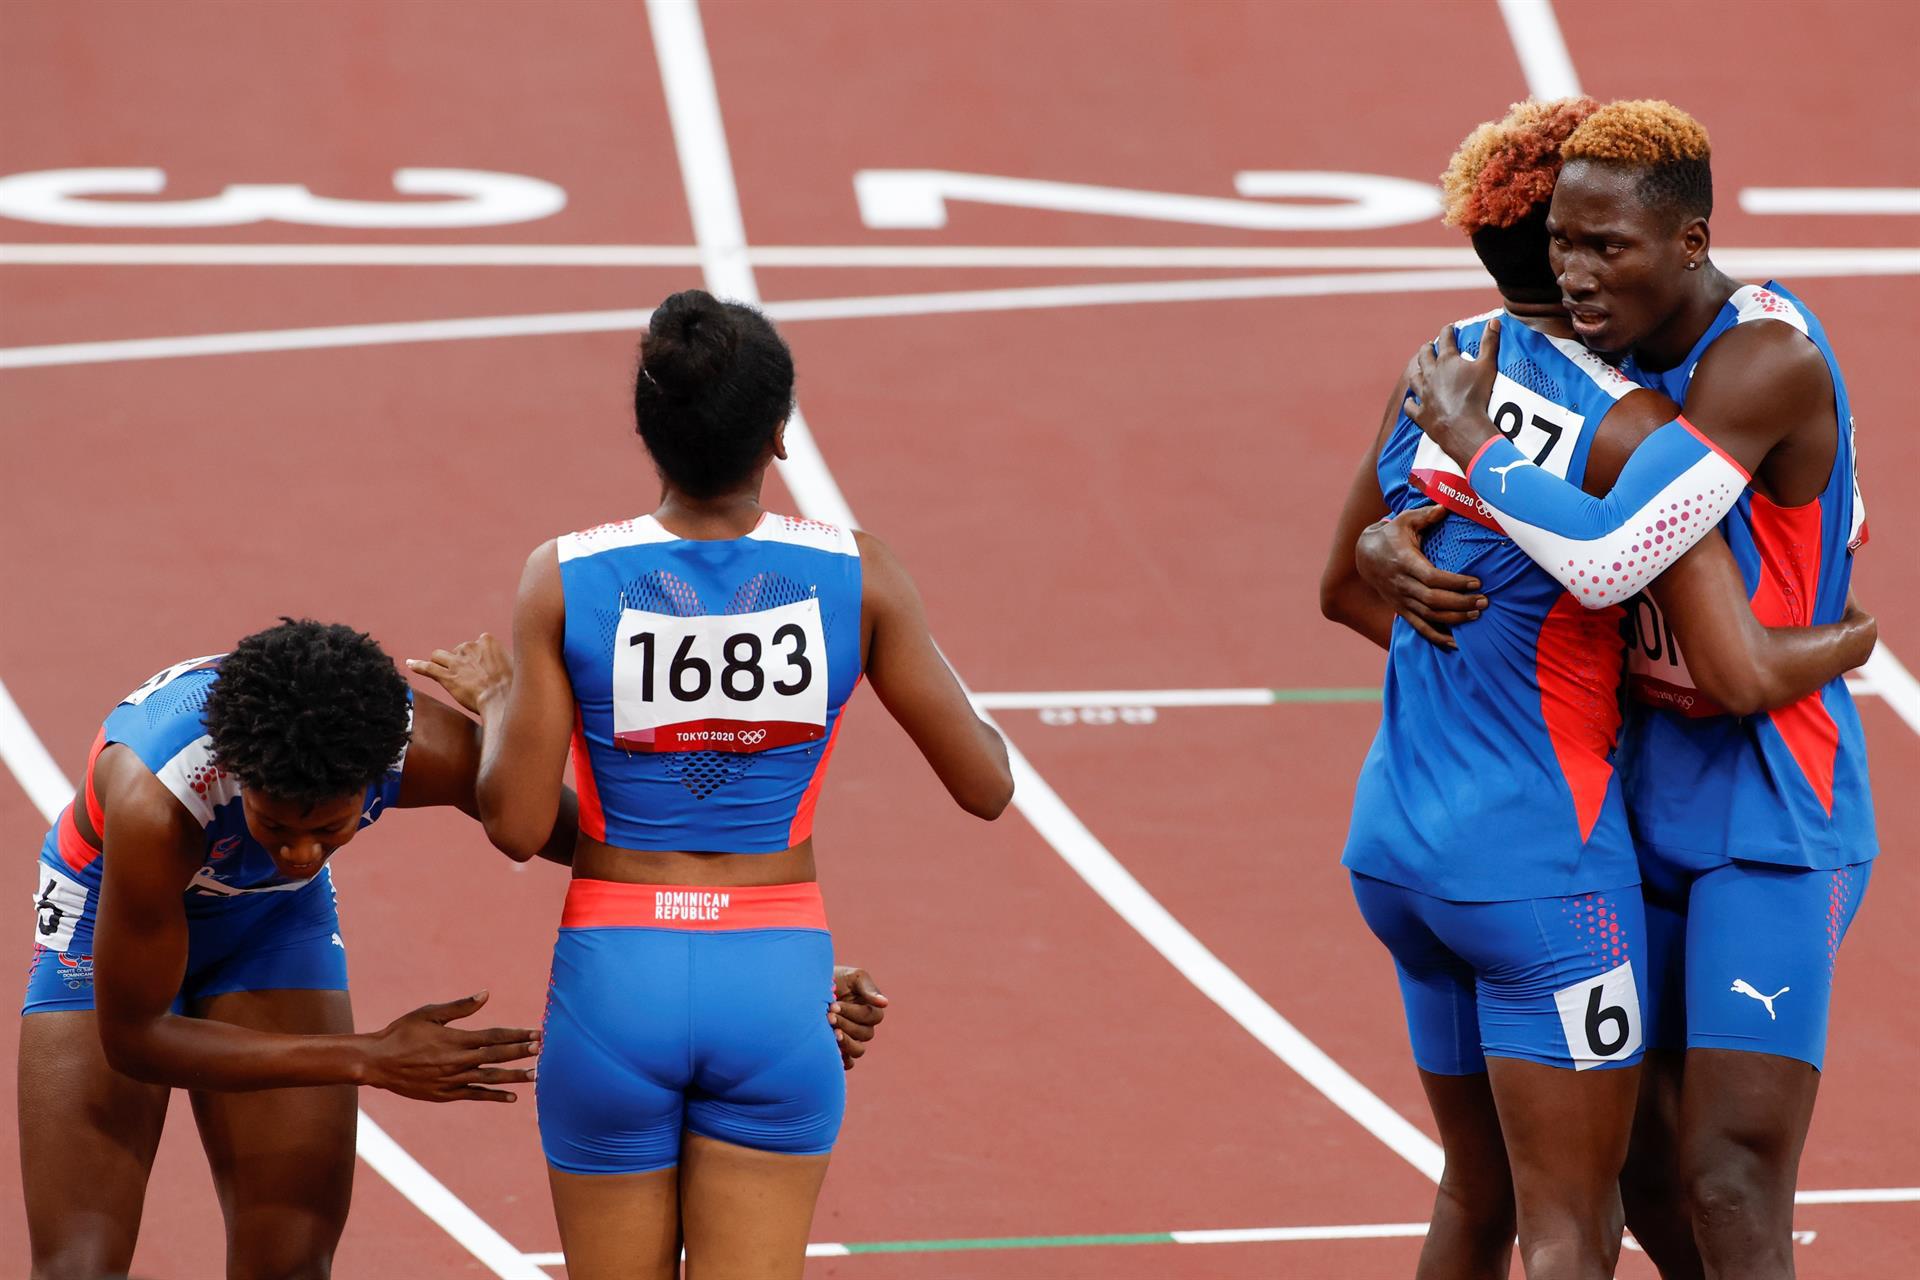 Atletas del equipo de República Dominicana consiguen la medalla de plata en la prueba de relevos mixtos 4x400m de atletismo durante los Juegos Olímpicos 2020, este sábado en el Estadio Olímpico de Tokio (Japón). EFE/ Alberto Estévez